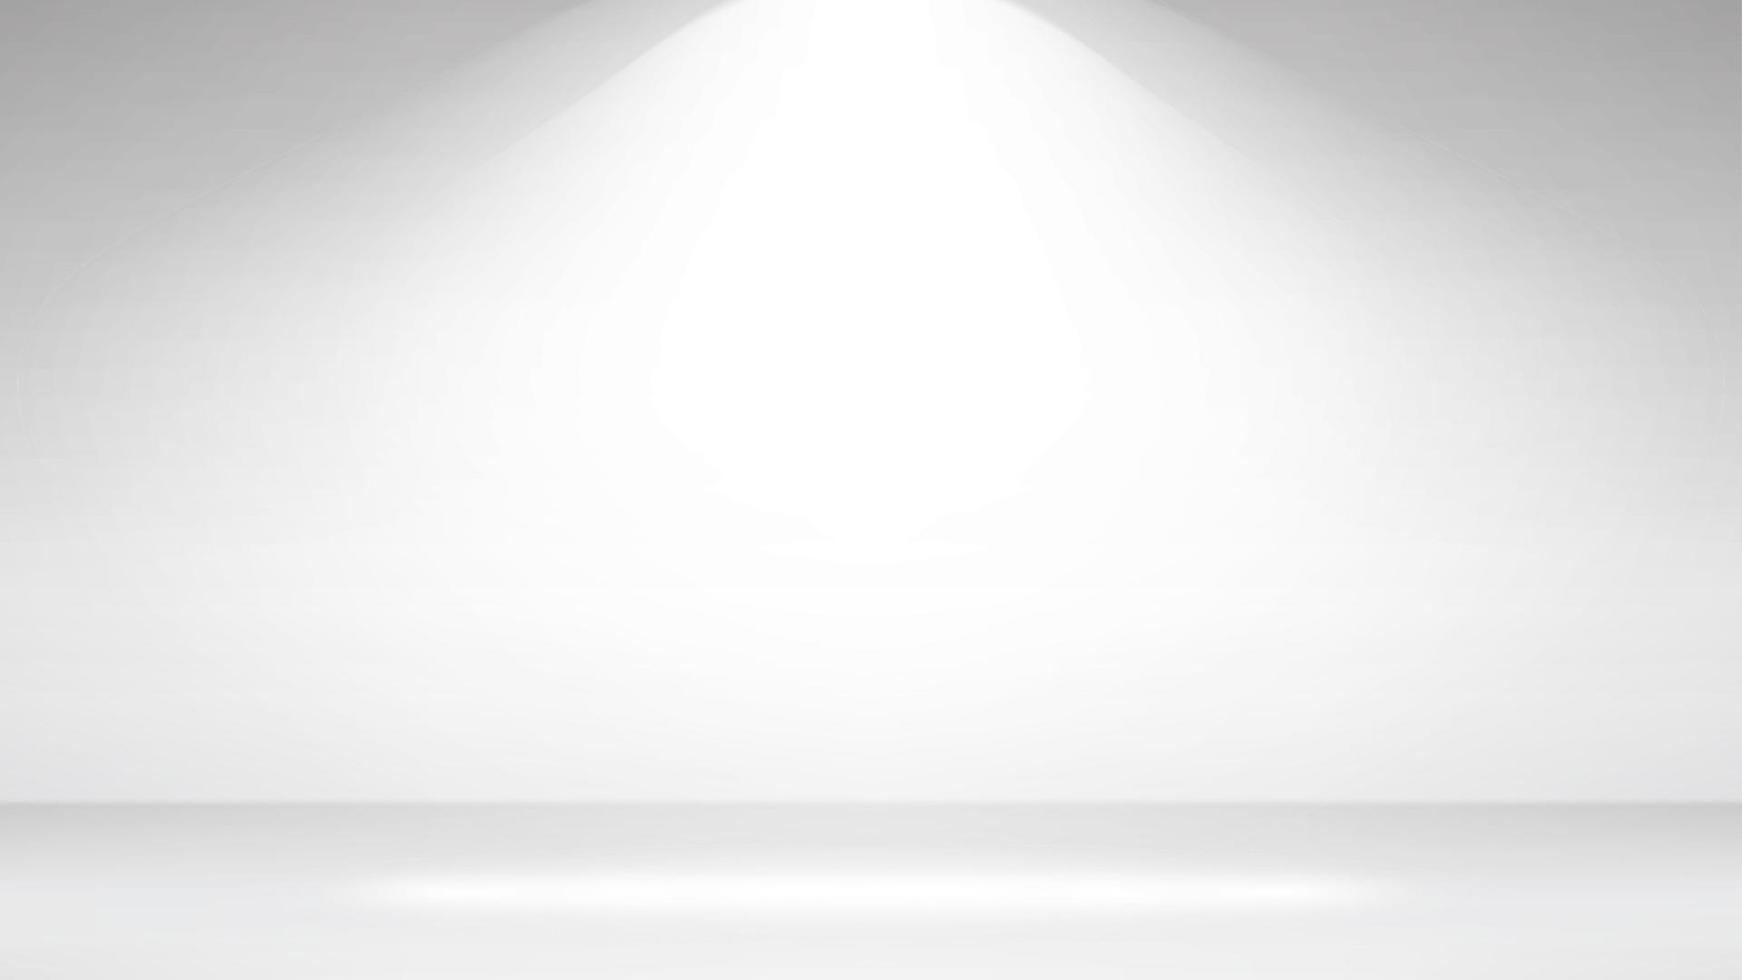 fond intérieur de studio photo blanc vide. mur blanc vide réaliste. illustration vectorielle. vecteur